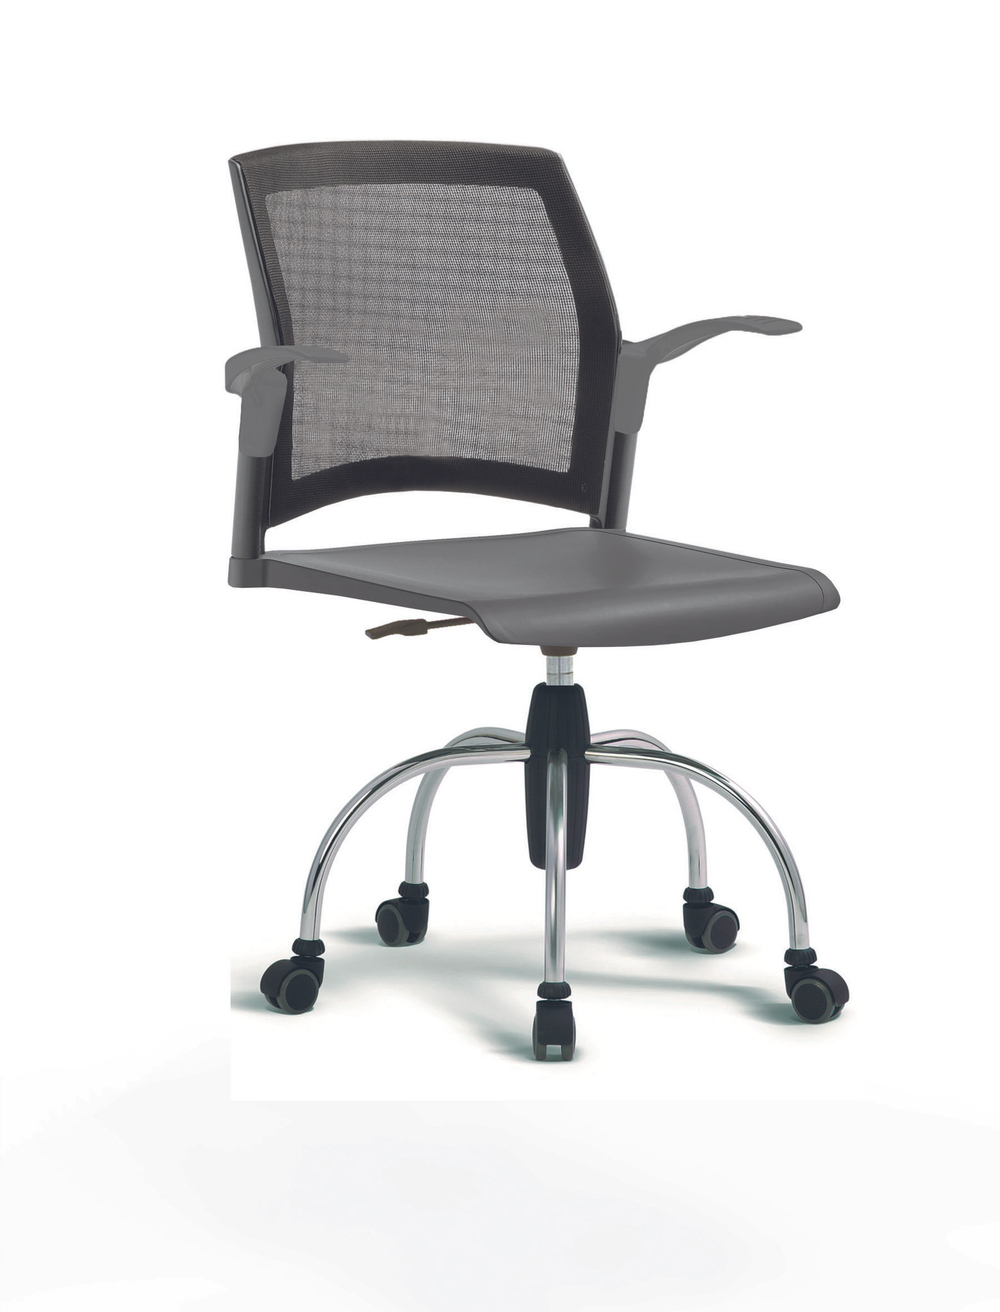 Кресло Rewind каркас хромированный, пластик серый, база паук хромированная, с открытыми подлокотниками, спинка-сетка